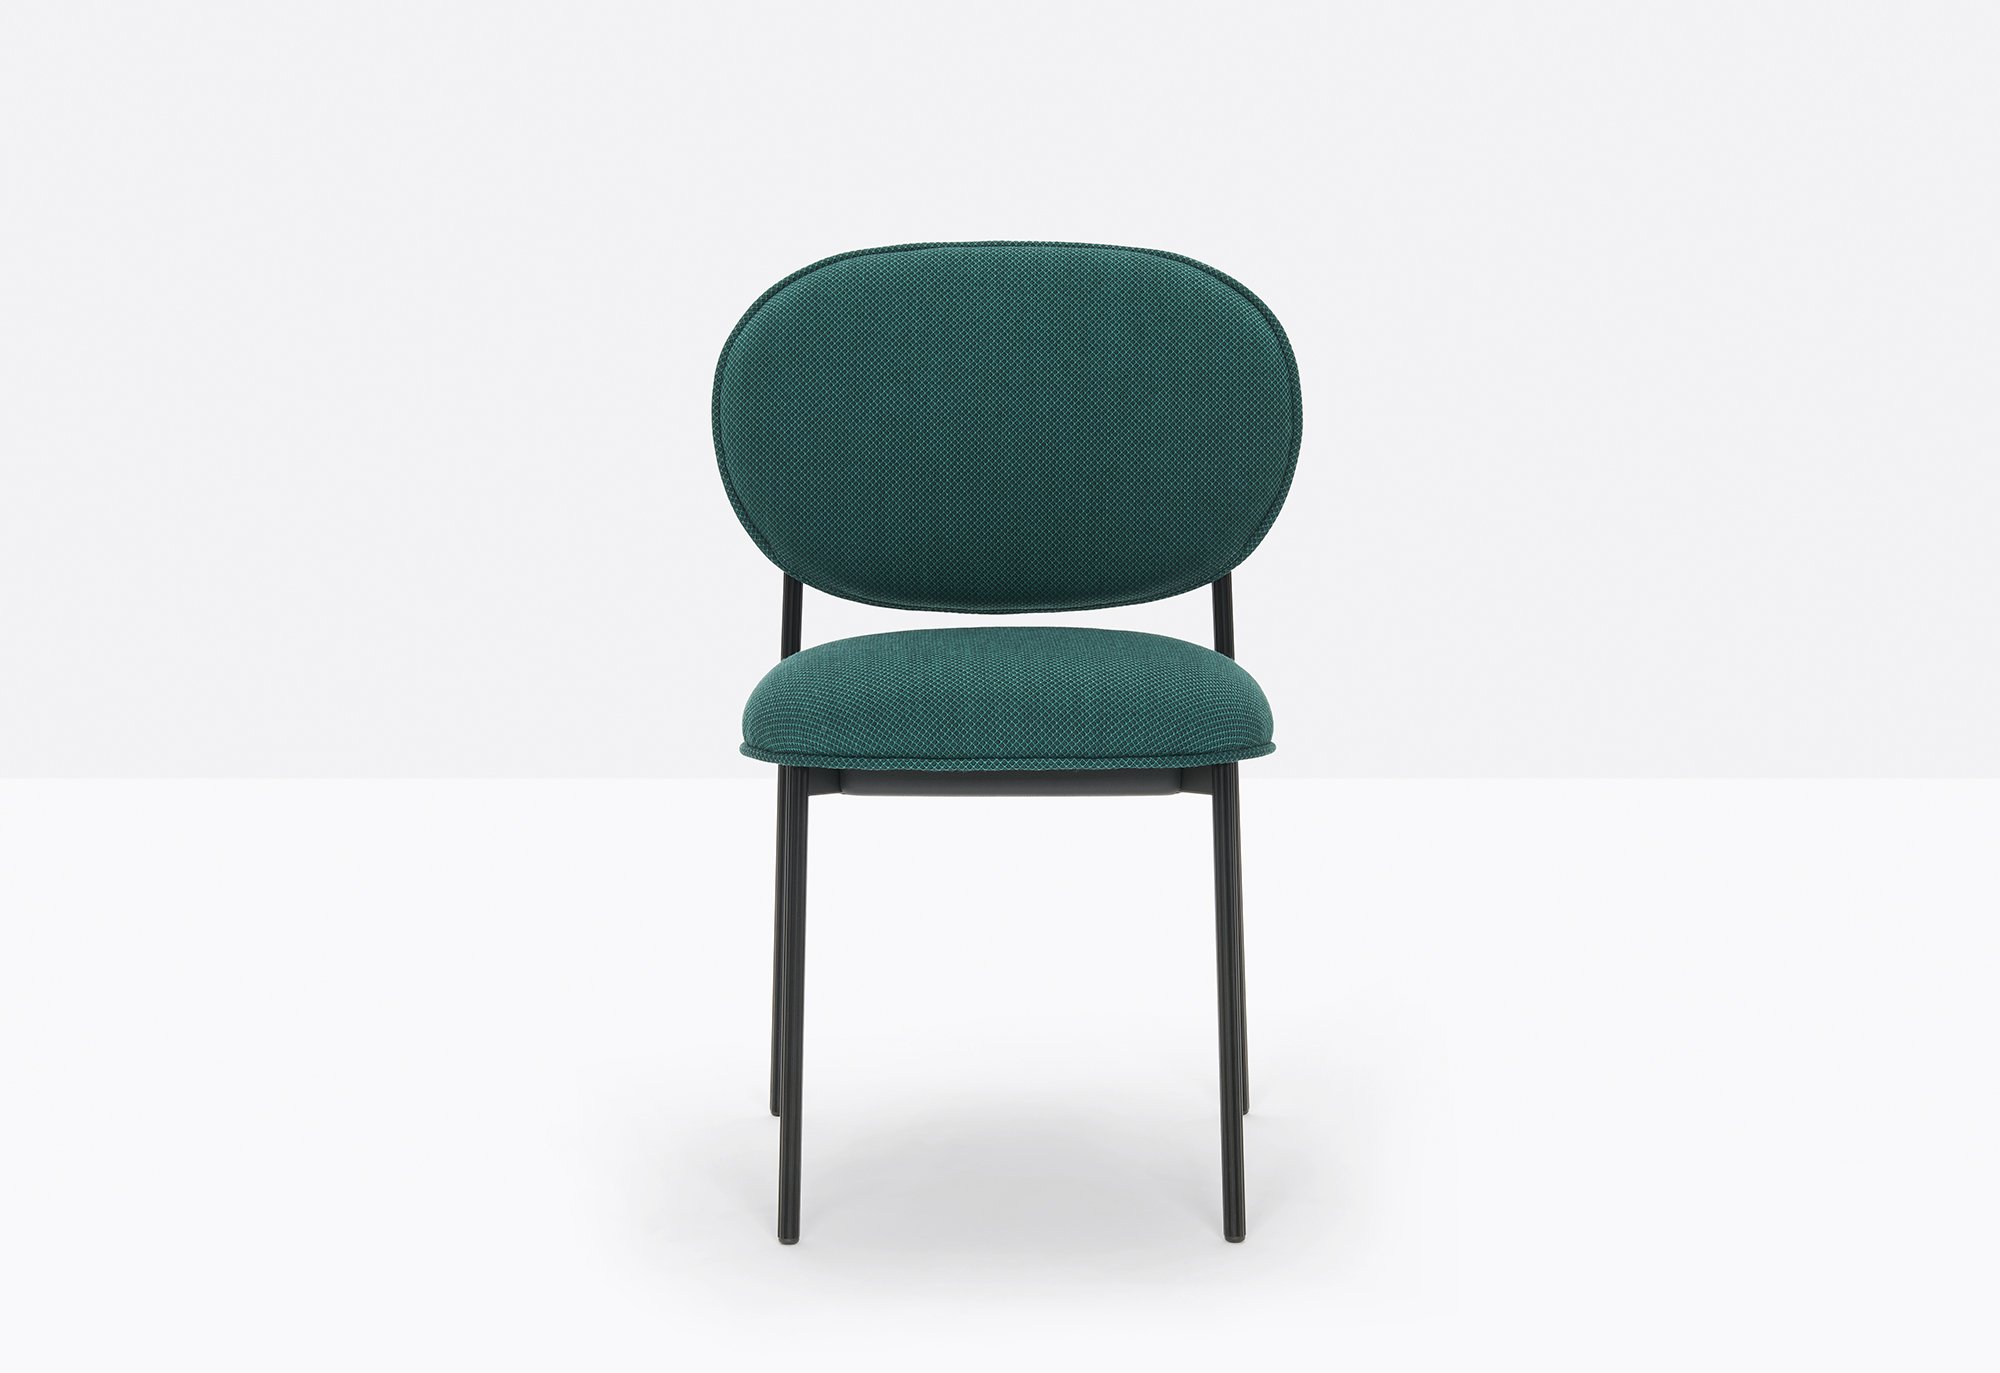 Blume Chair from Pedrali, designed by Sebastian Herkner